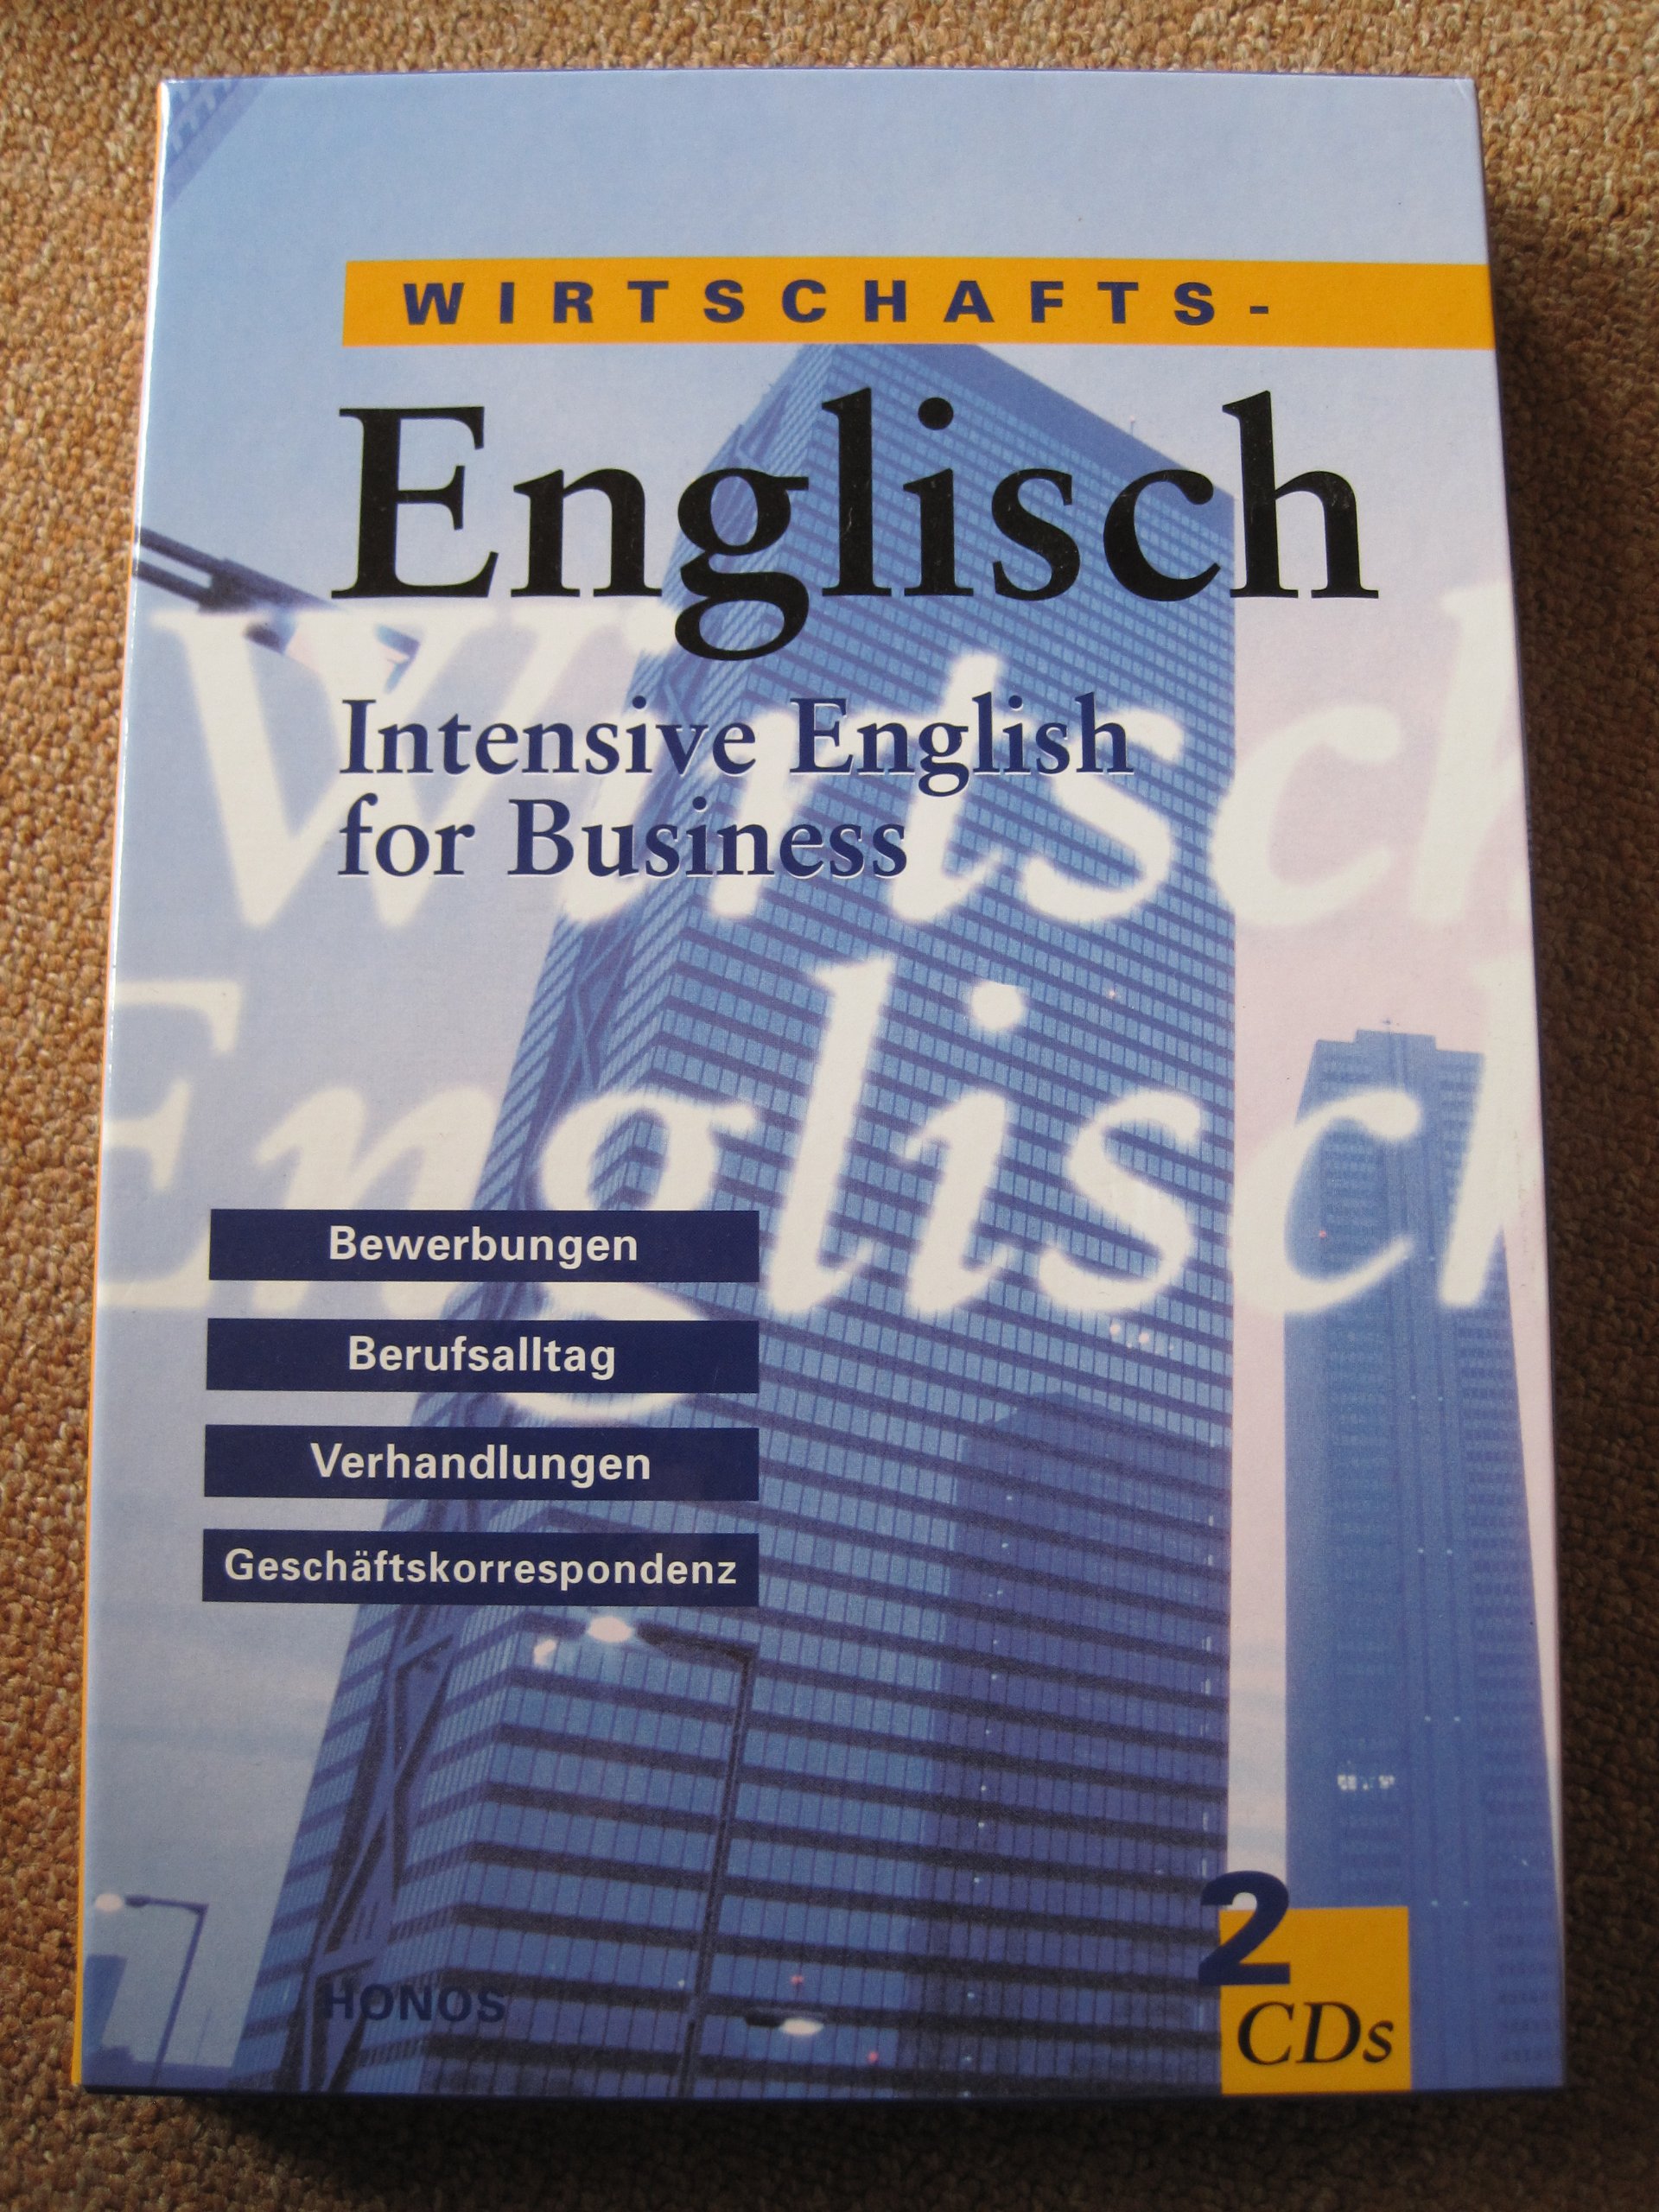 Wirtschafts-Englisch - Intensive English for Business - mit 2 CD's 